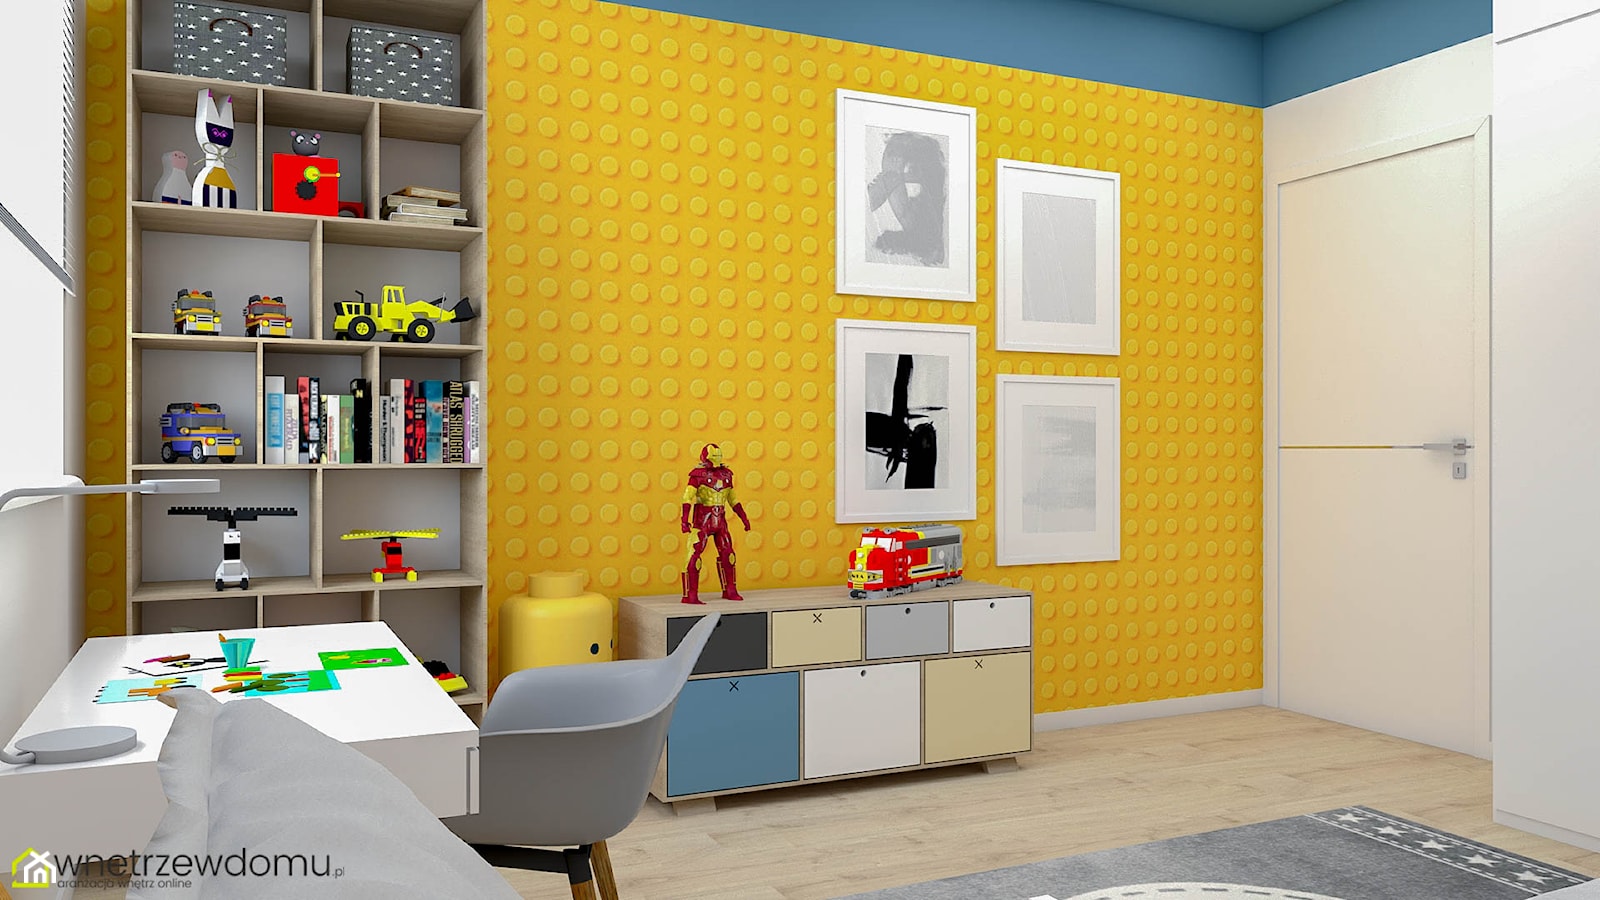 Kolorowy pokój dla fana Lego - zdjęcie od wnetrzewdomu - Homebook